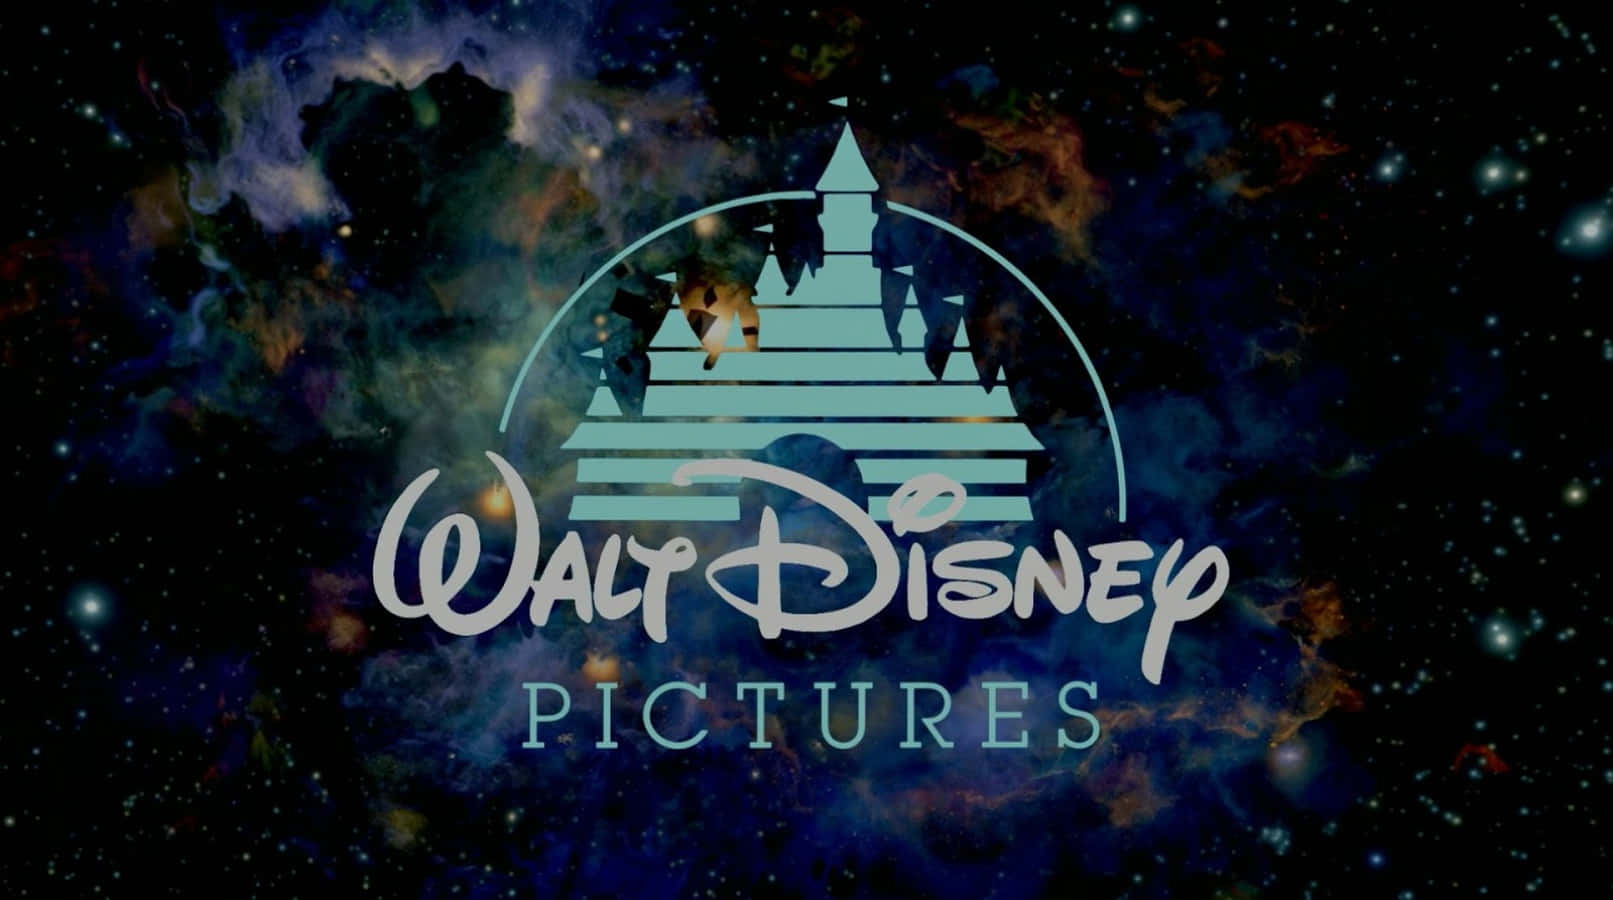 Imagenverde De Walt Disney